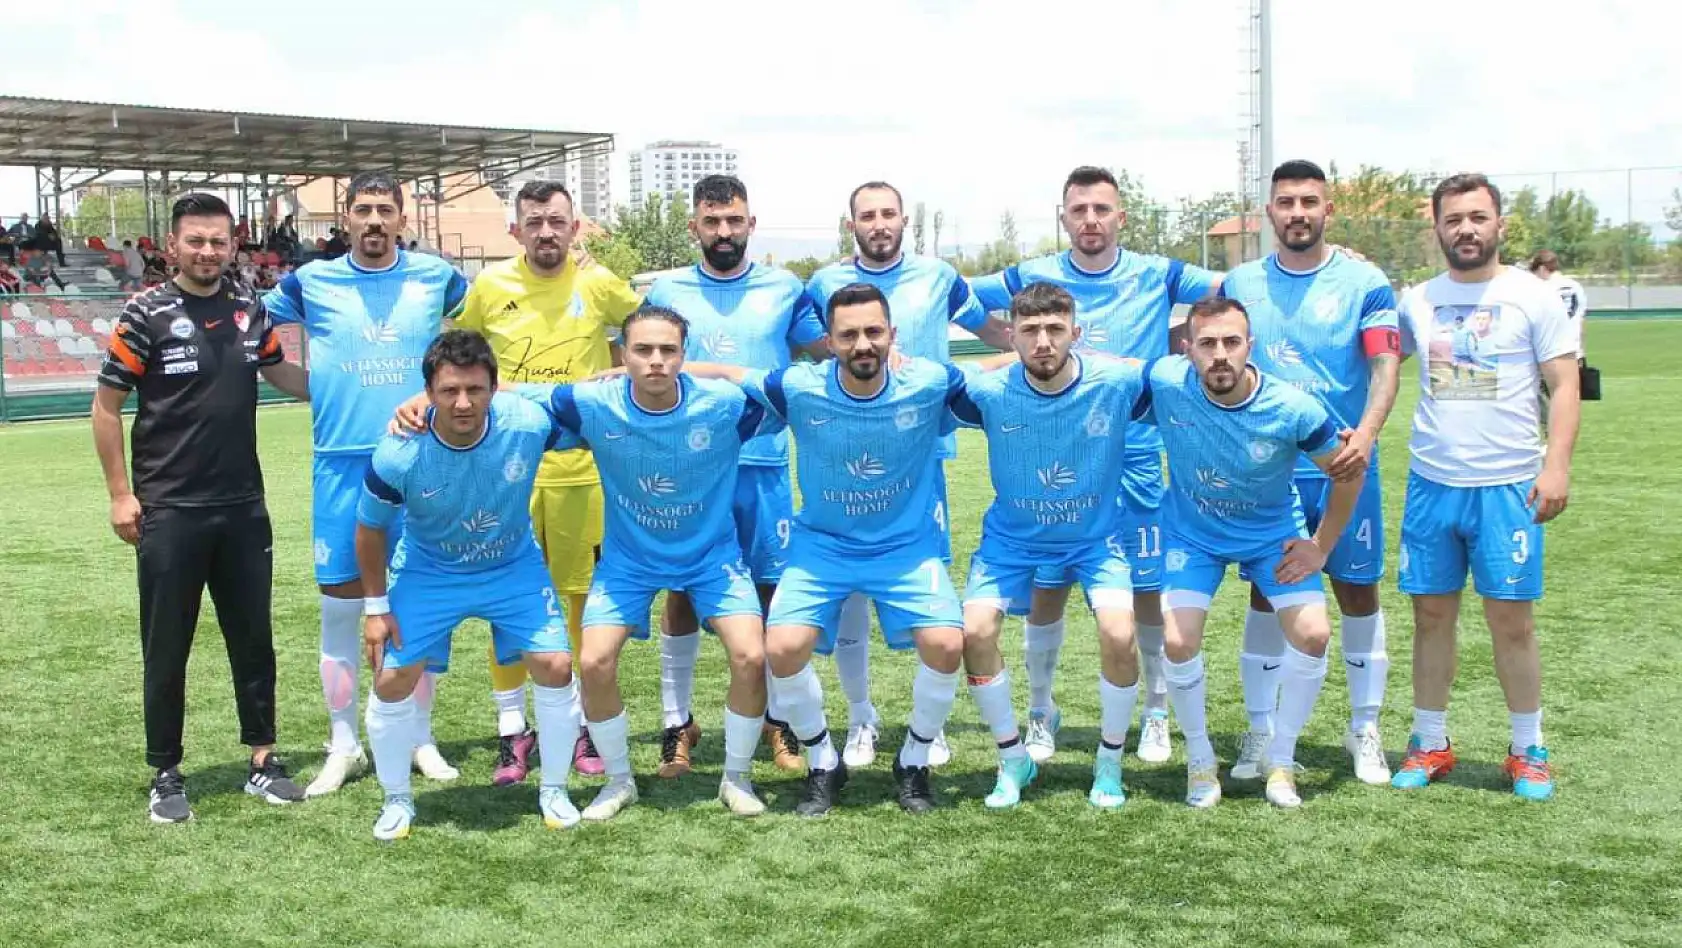 2019'da kurulan Sarız Anadoluspor ilk şampiyonluğuna 1 maç uzakta!